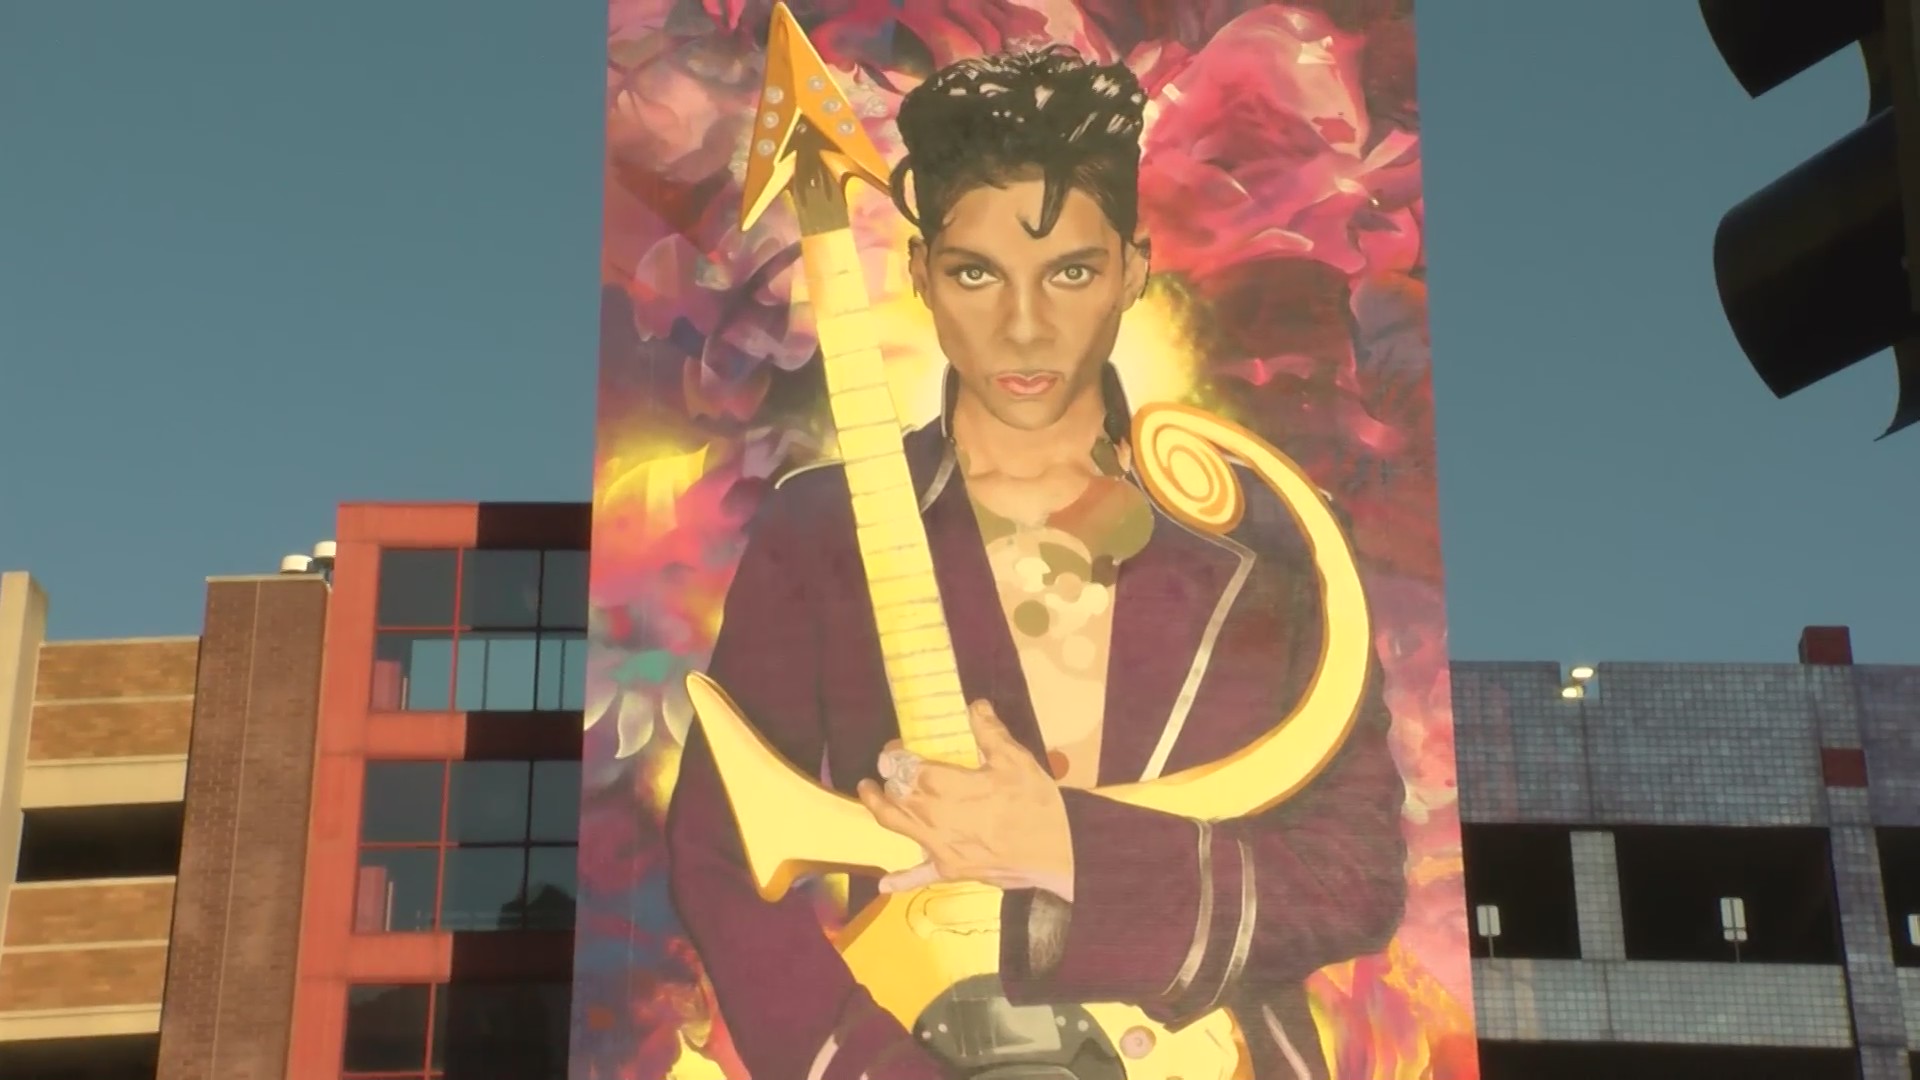 Pusat kota Mpls.  Lukisan Dinding Pangeran Akan Diungkap Kamis – WCCO